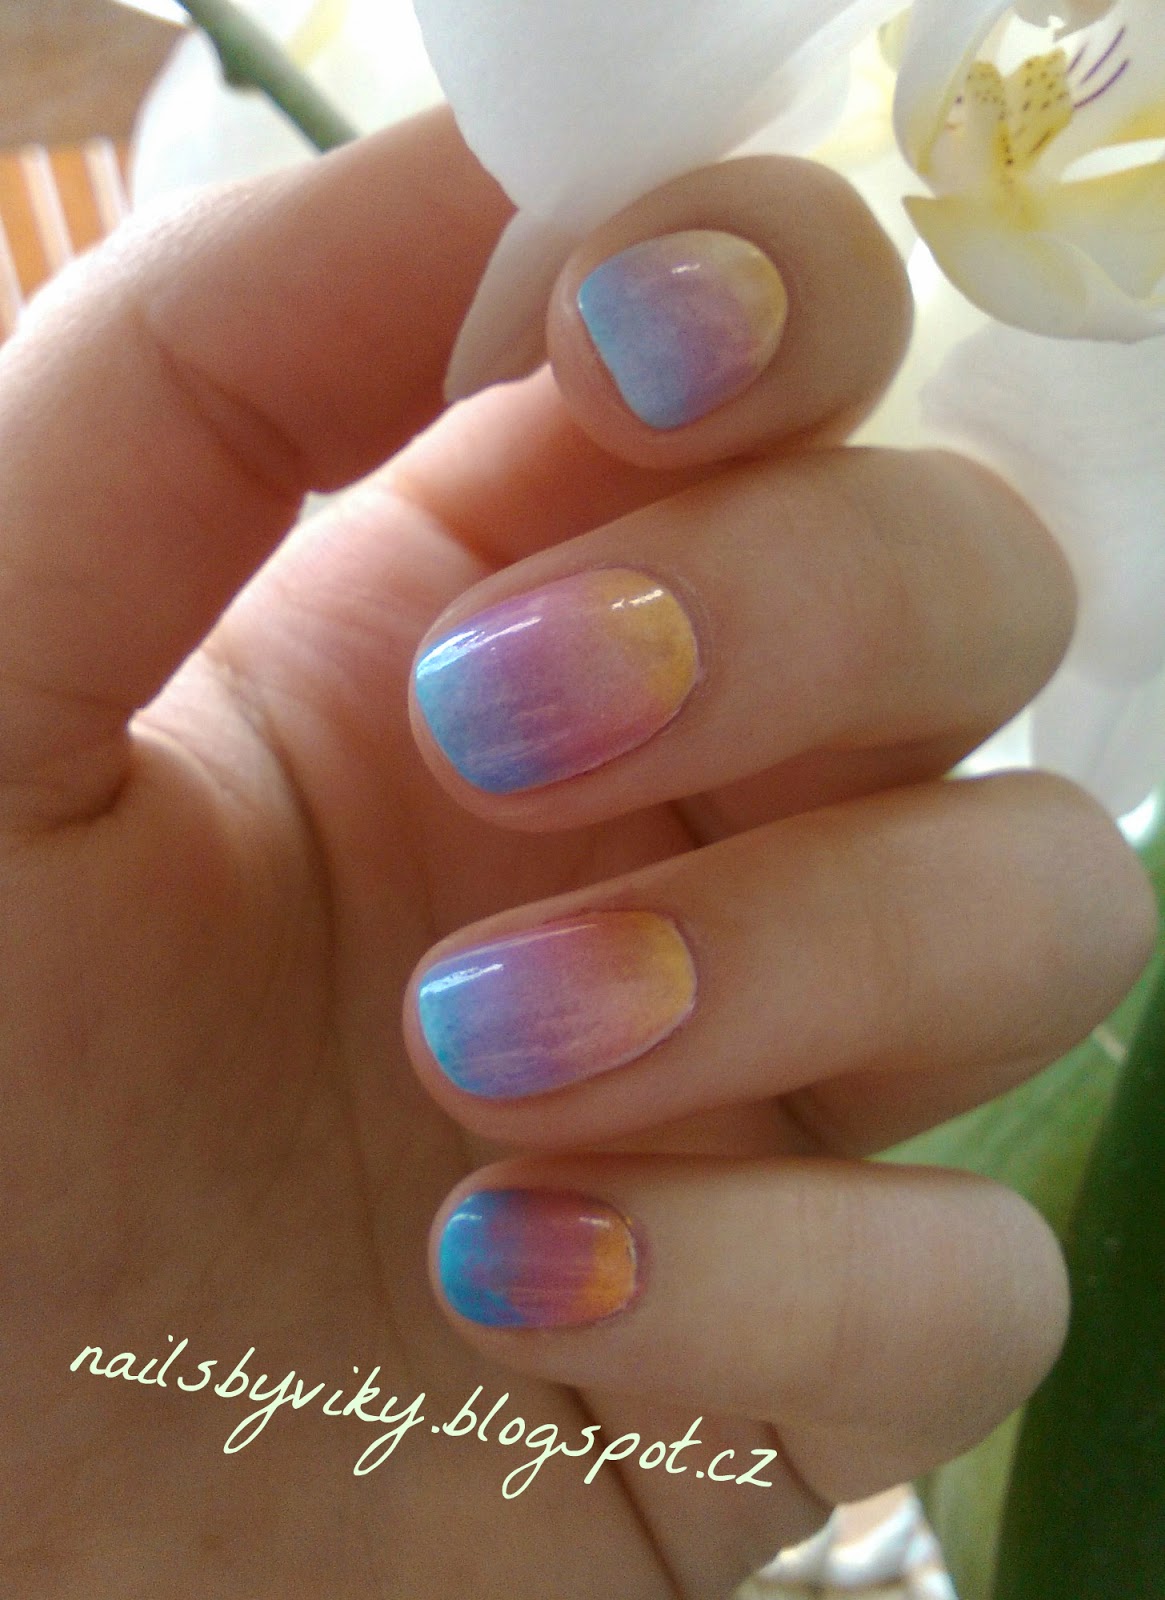 Nails By Viky Velikonocni Ombre